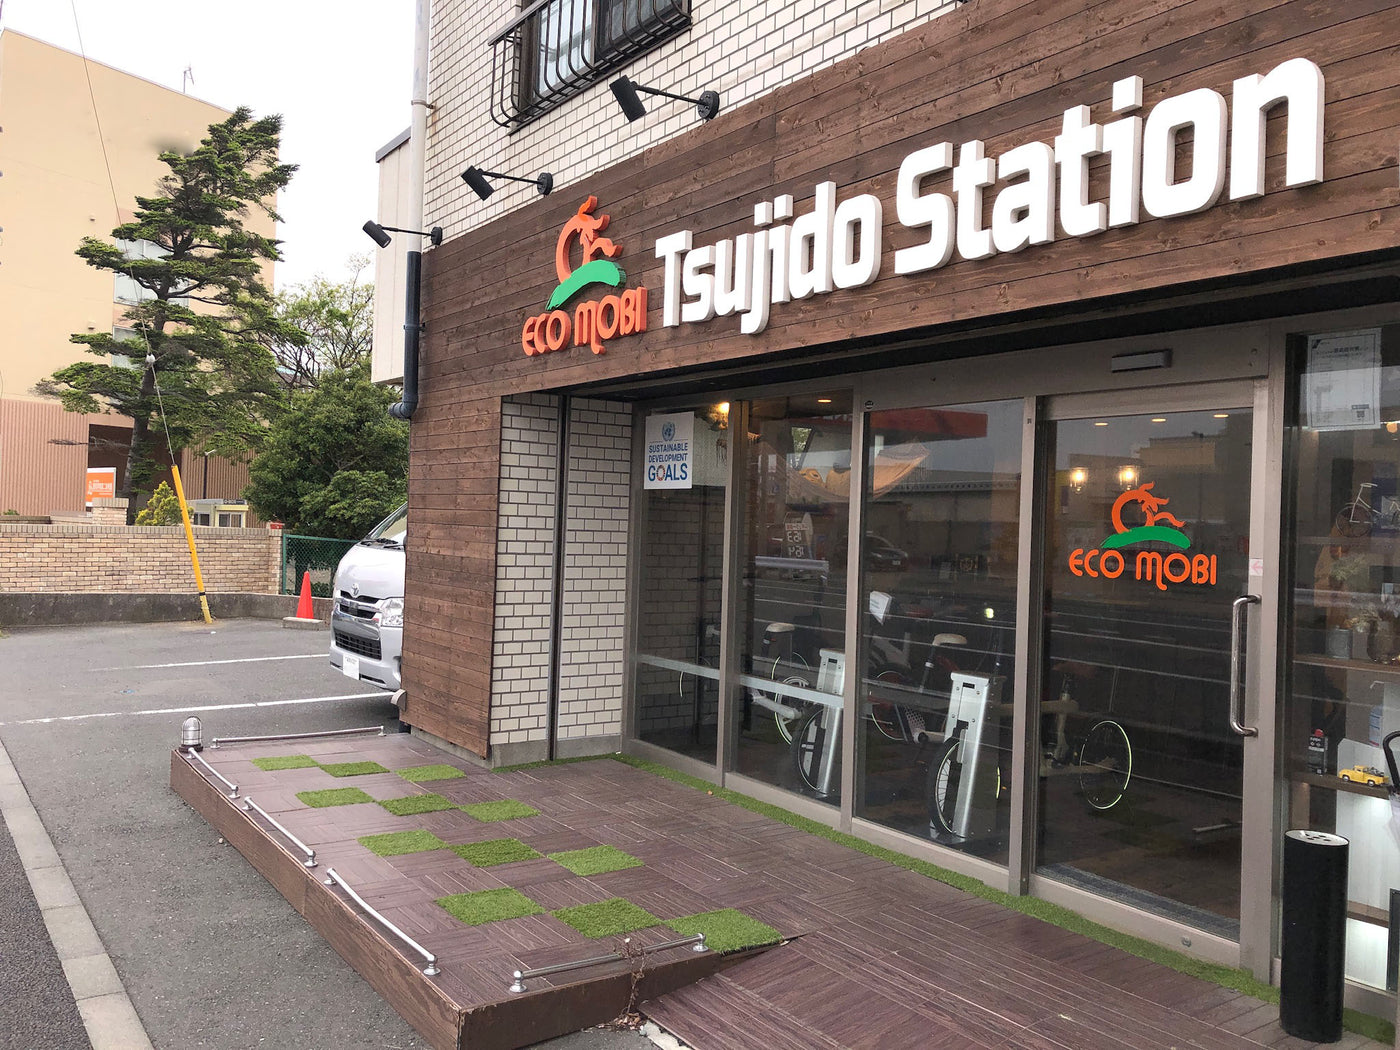 ECOMOBI TsujidoStation